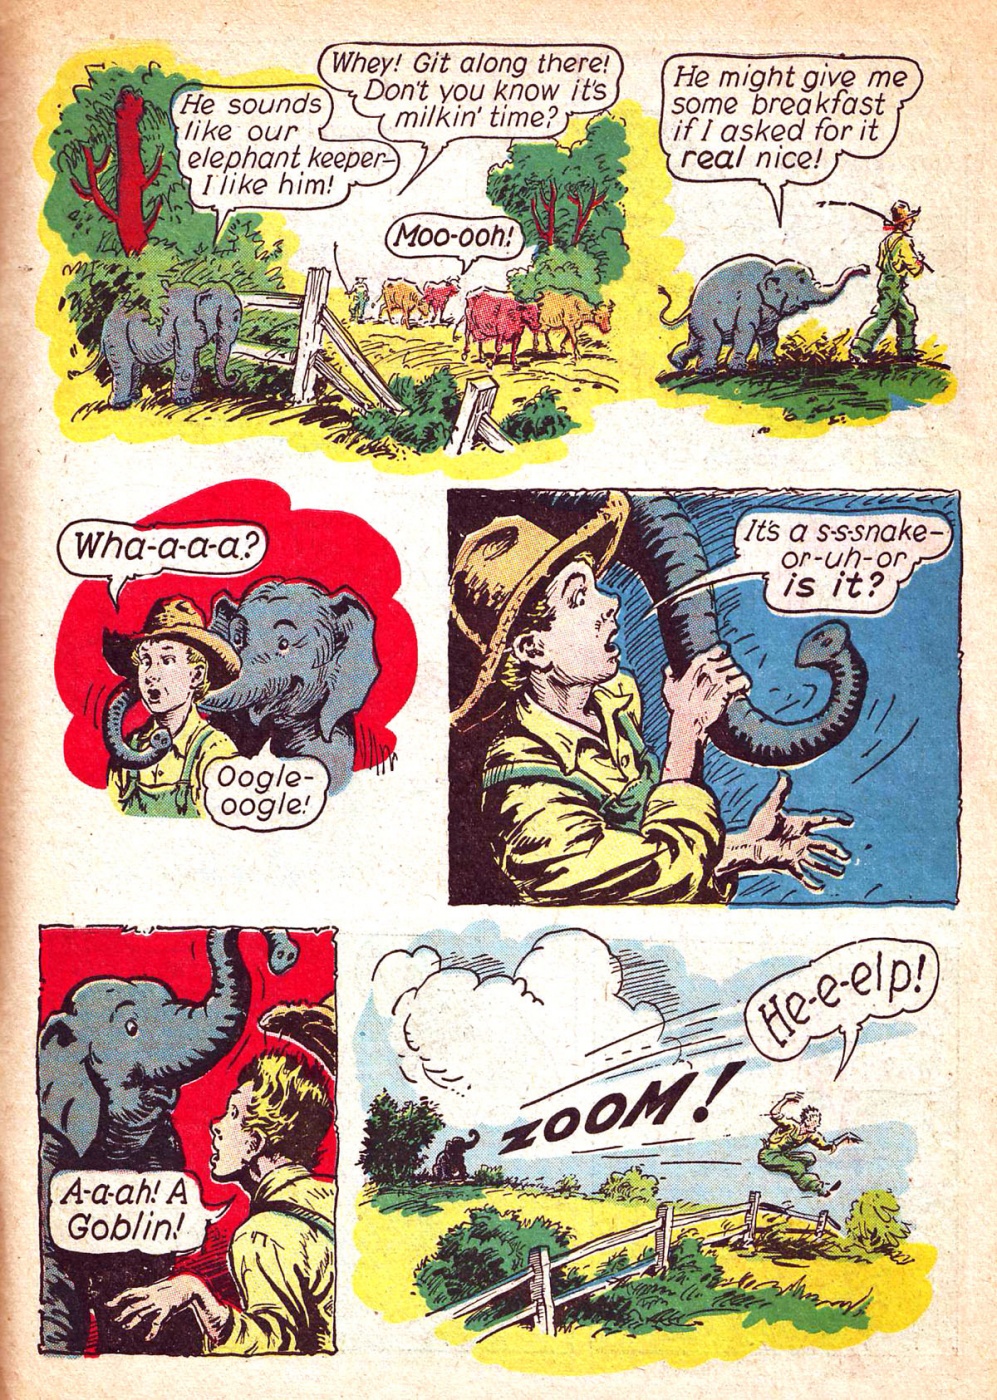 Funny Animal Comics (59)